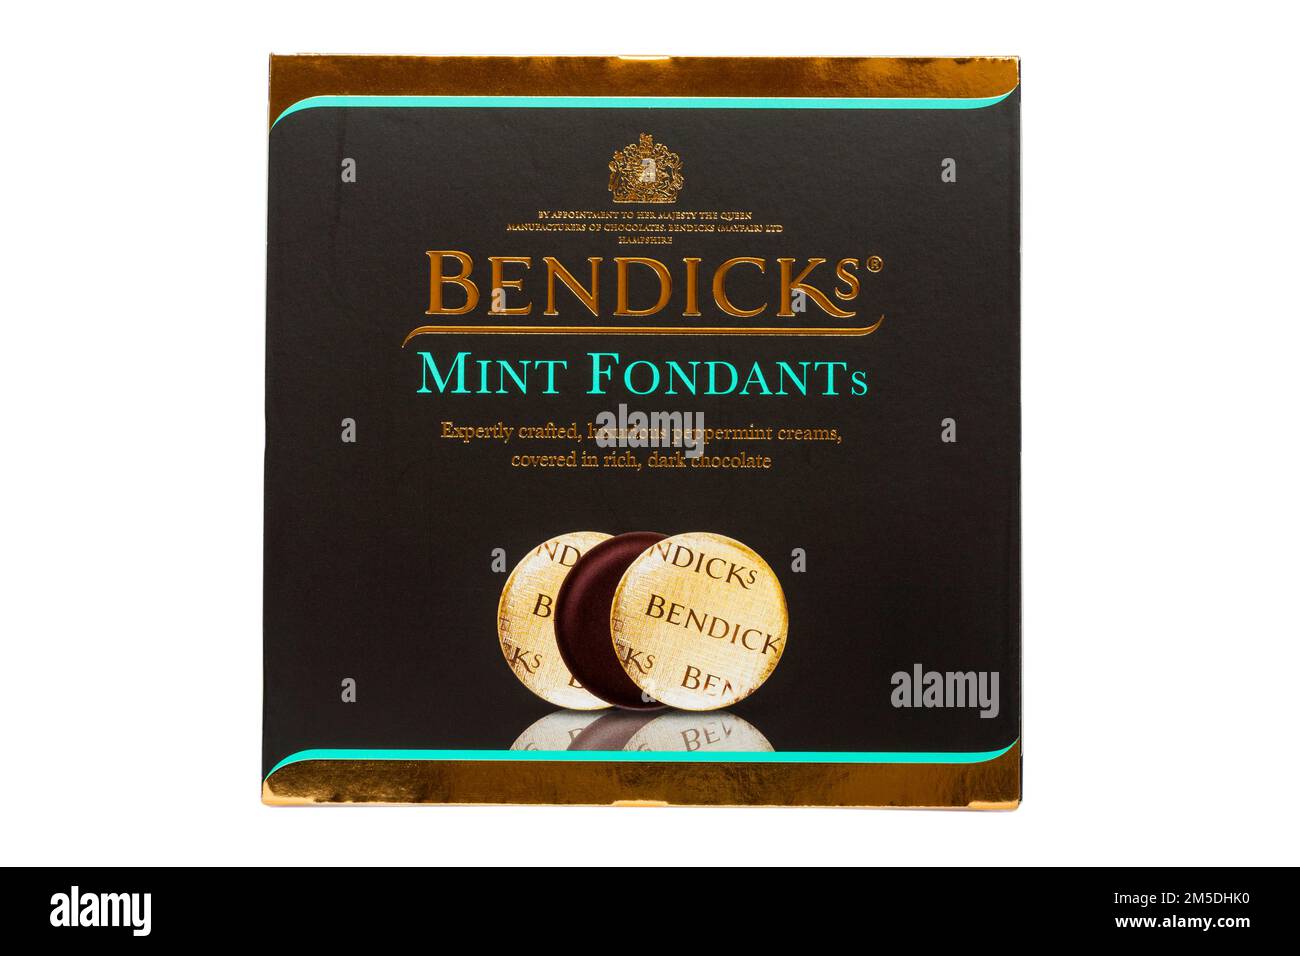 Boîte de pastilles de menthe Bendicks isolées sur fond blanc - crèmes de menthe poivrée couvertes de chocolat noir riche Banque D'Images